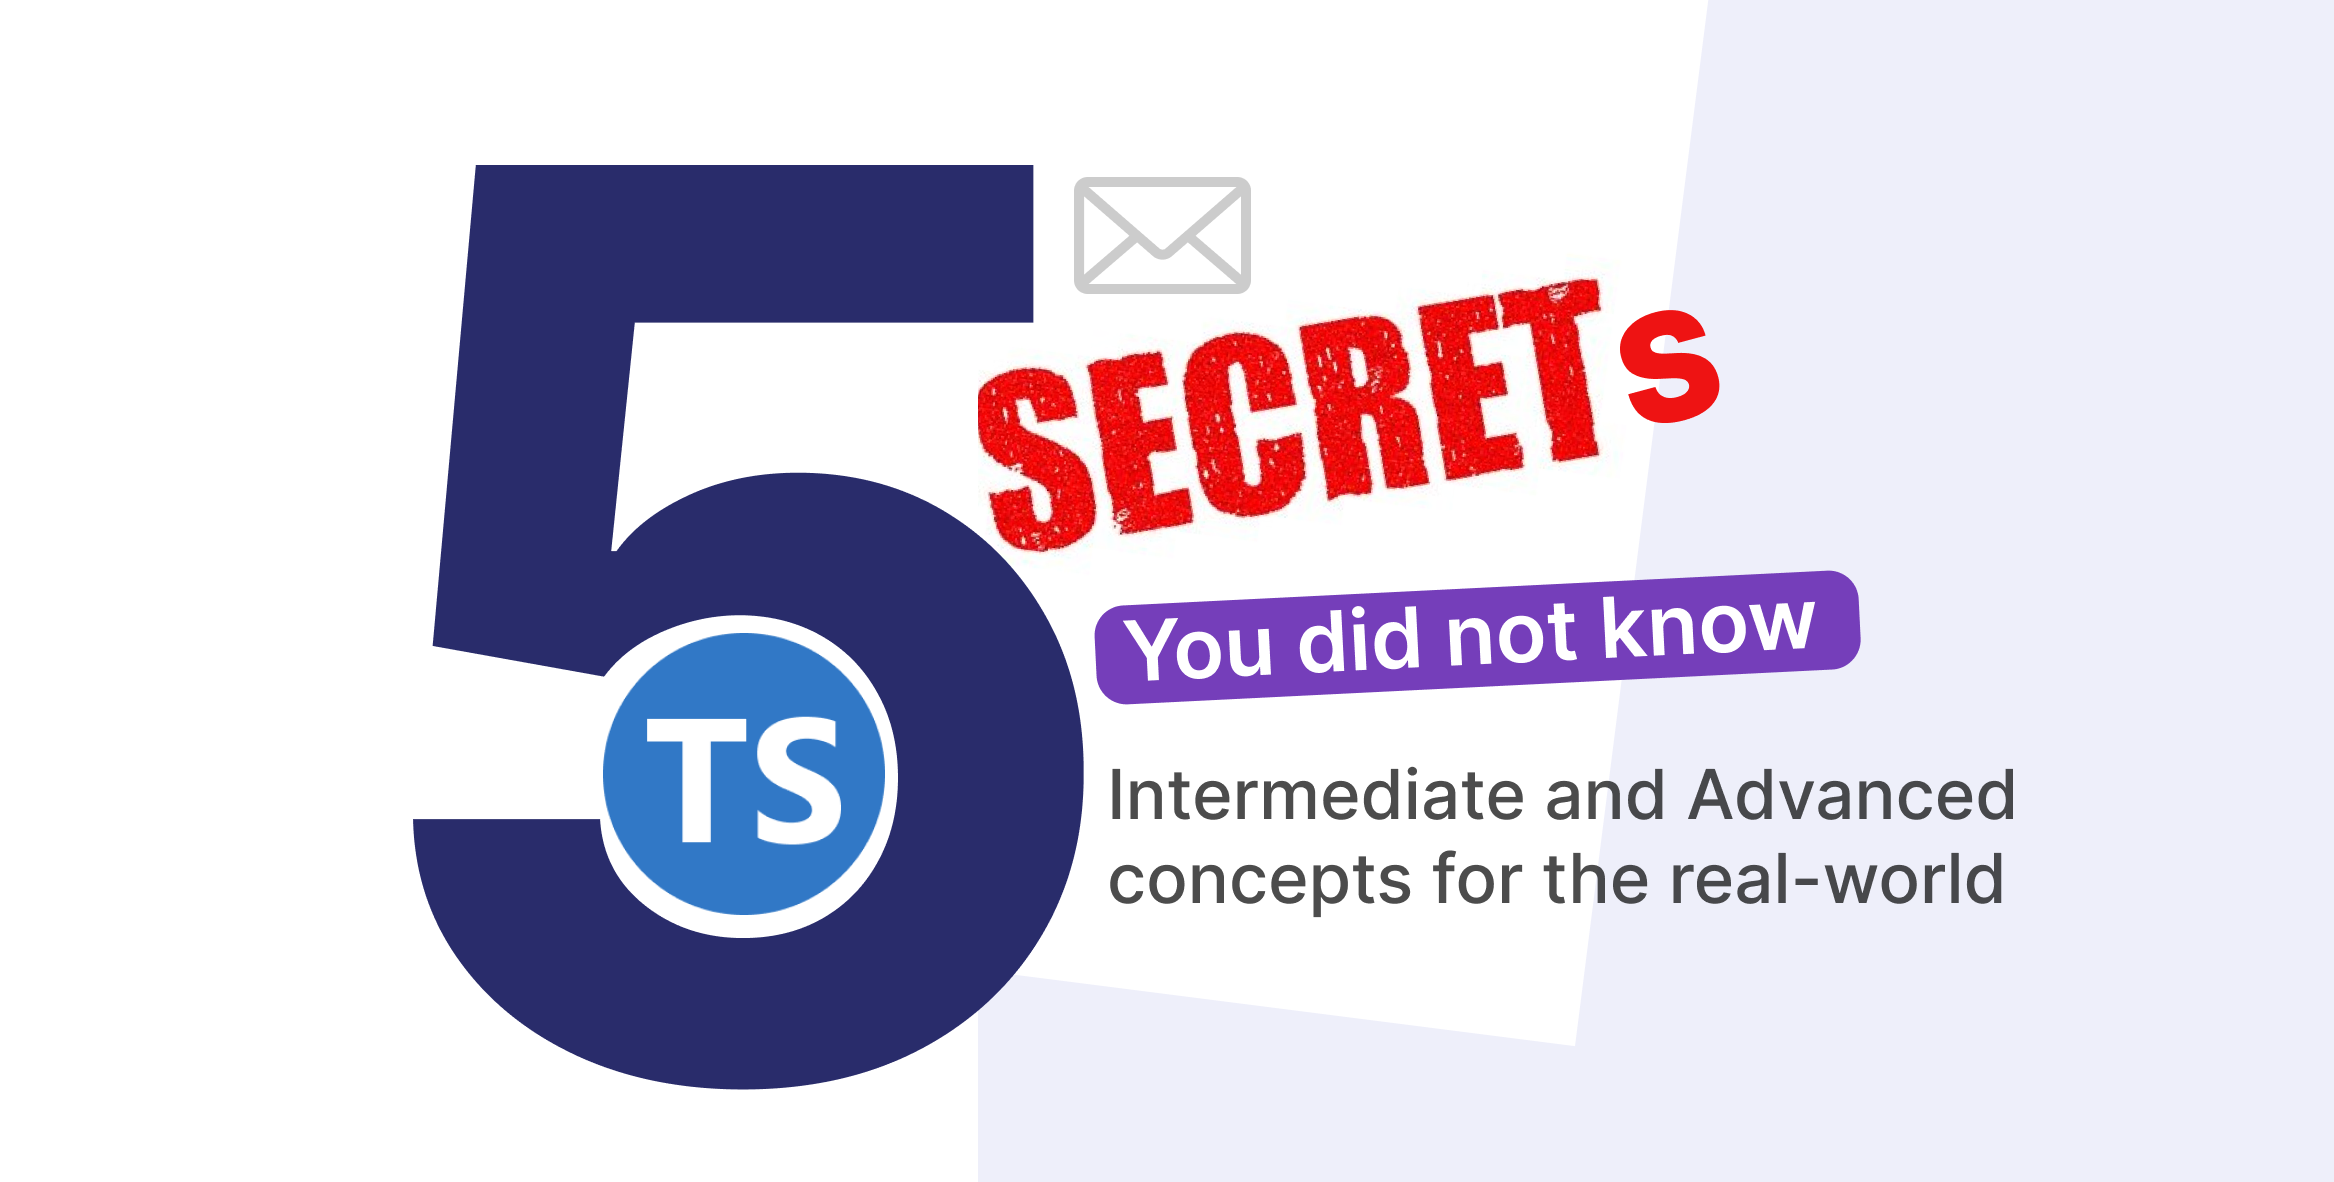 5-TS-secrets@3x